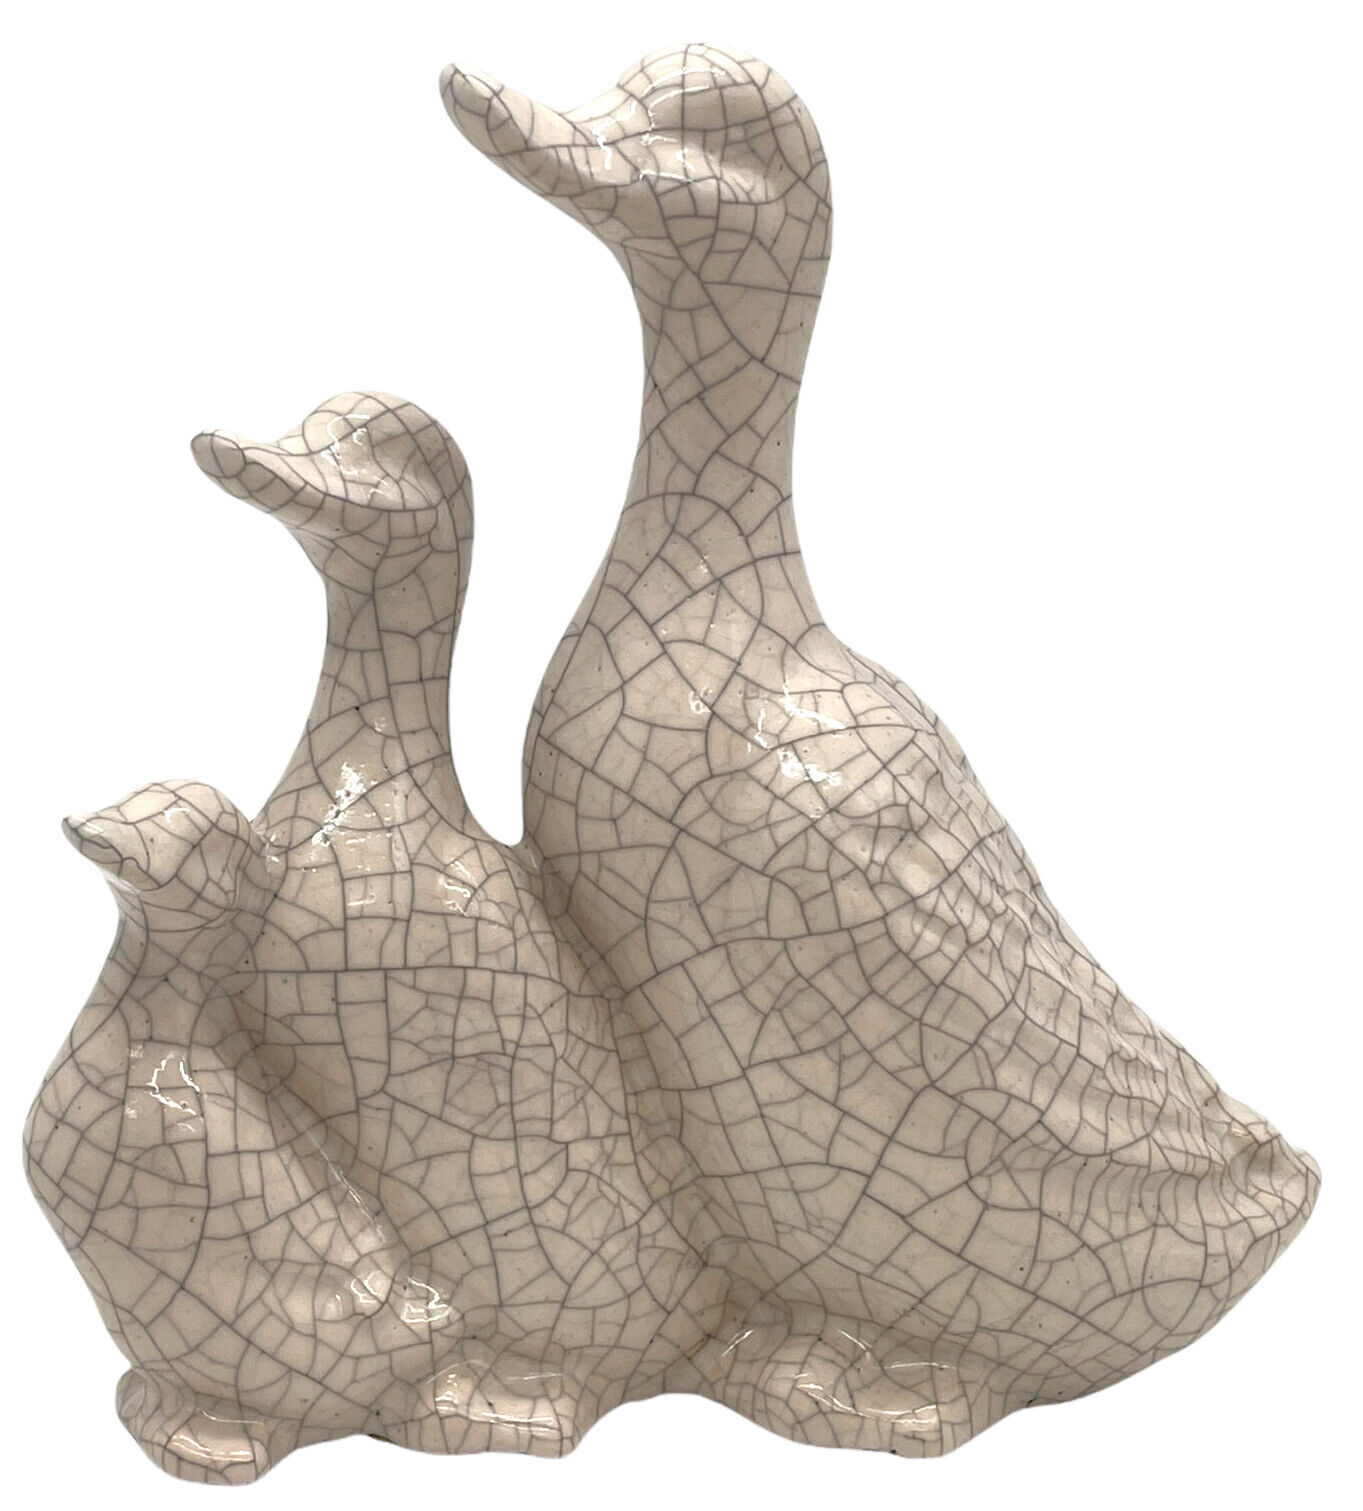 Vintage 3 Ducks Crackle Glaze Ceramic Statue Decor White 9” X 8” Mallard Unique